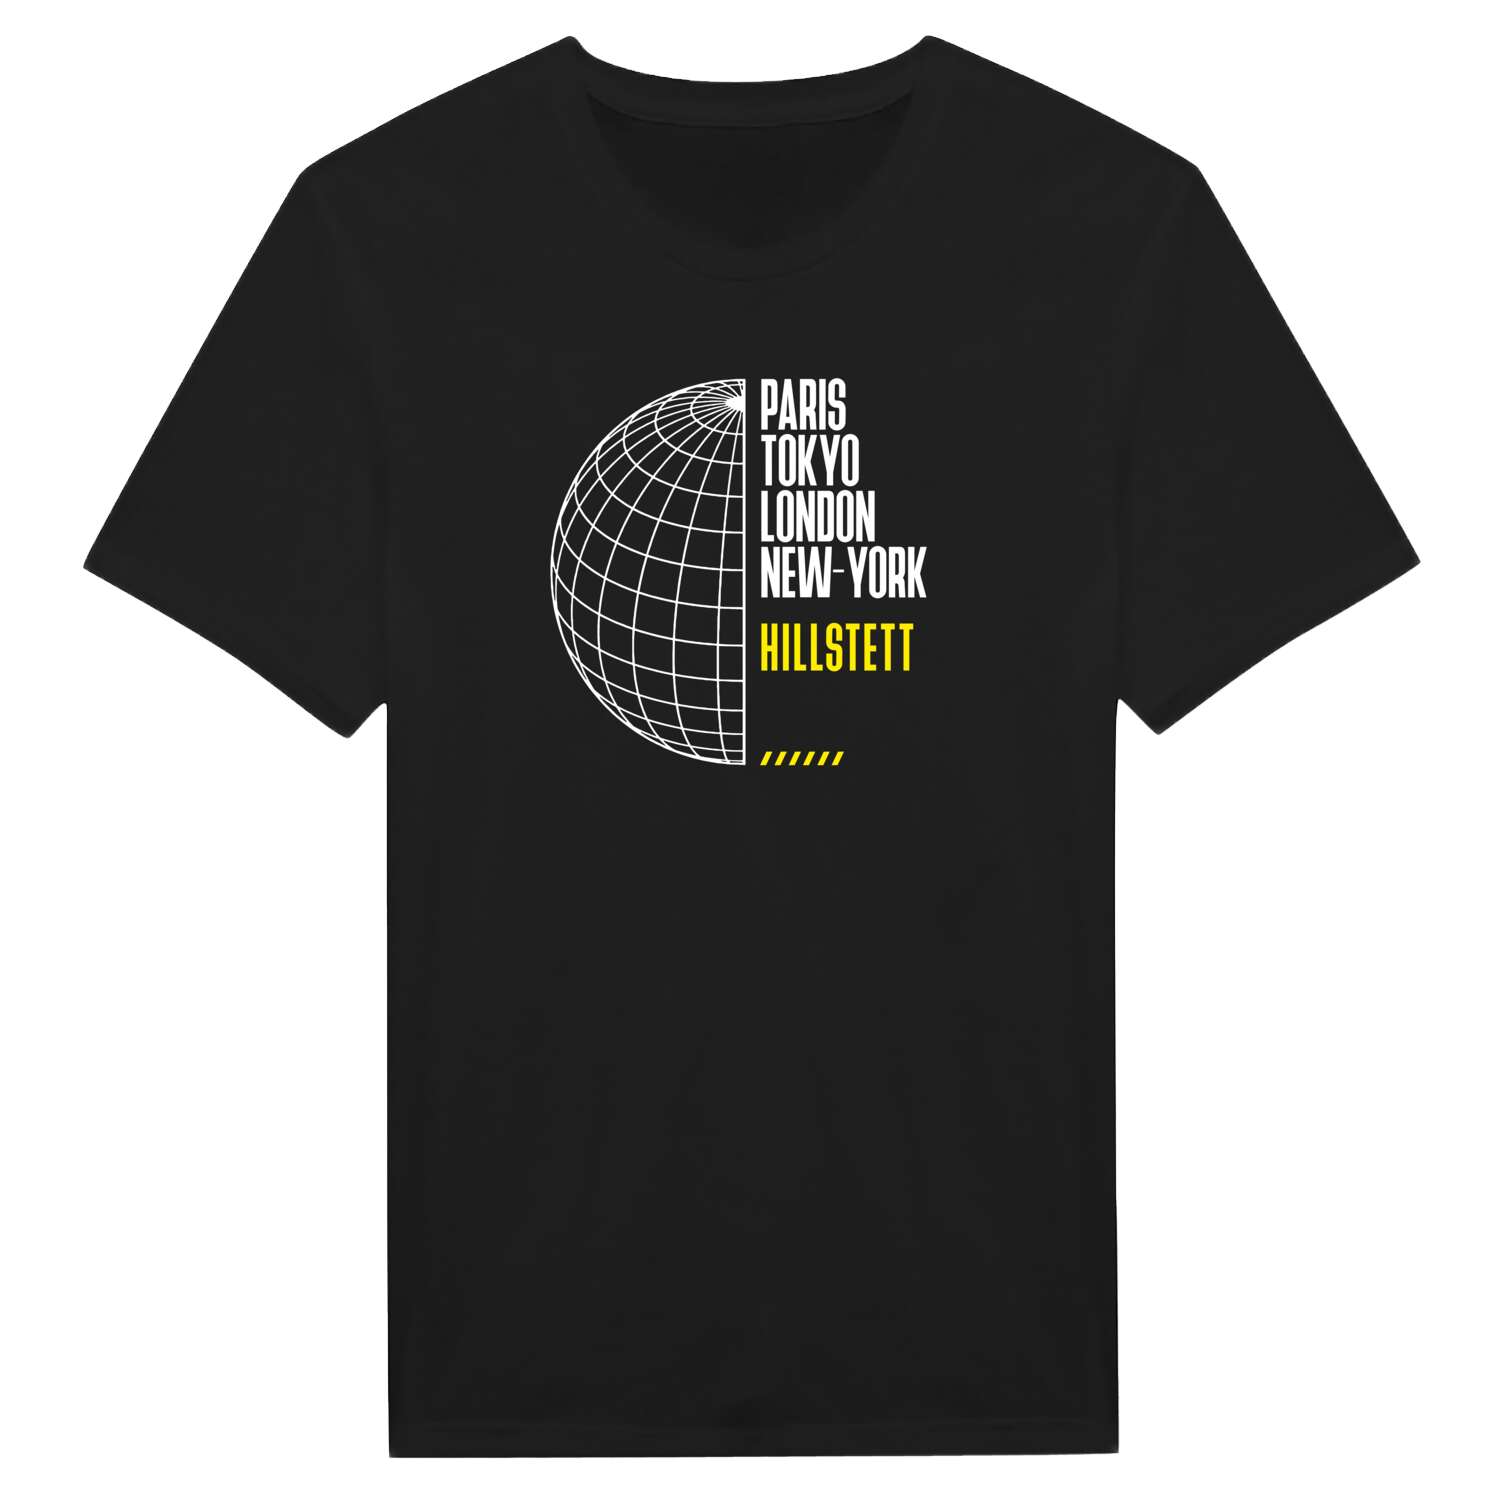 Hillstett T-Shirt »Paris Tokyo London«